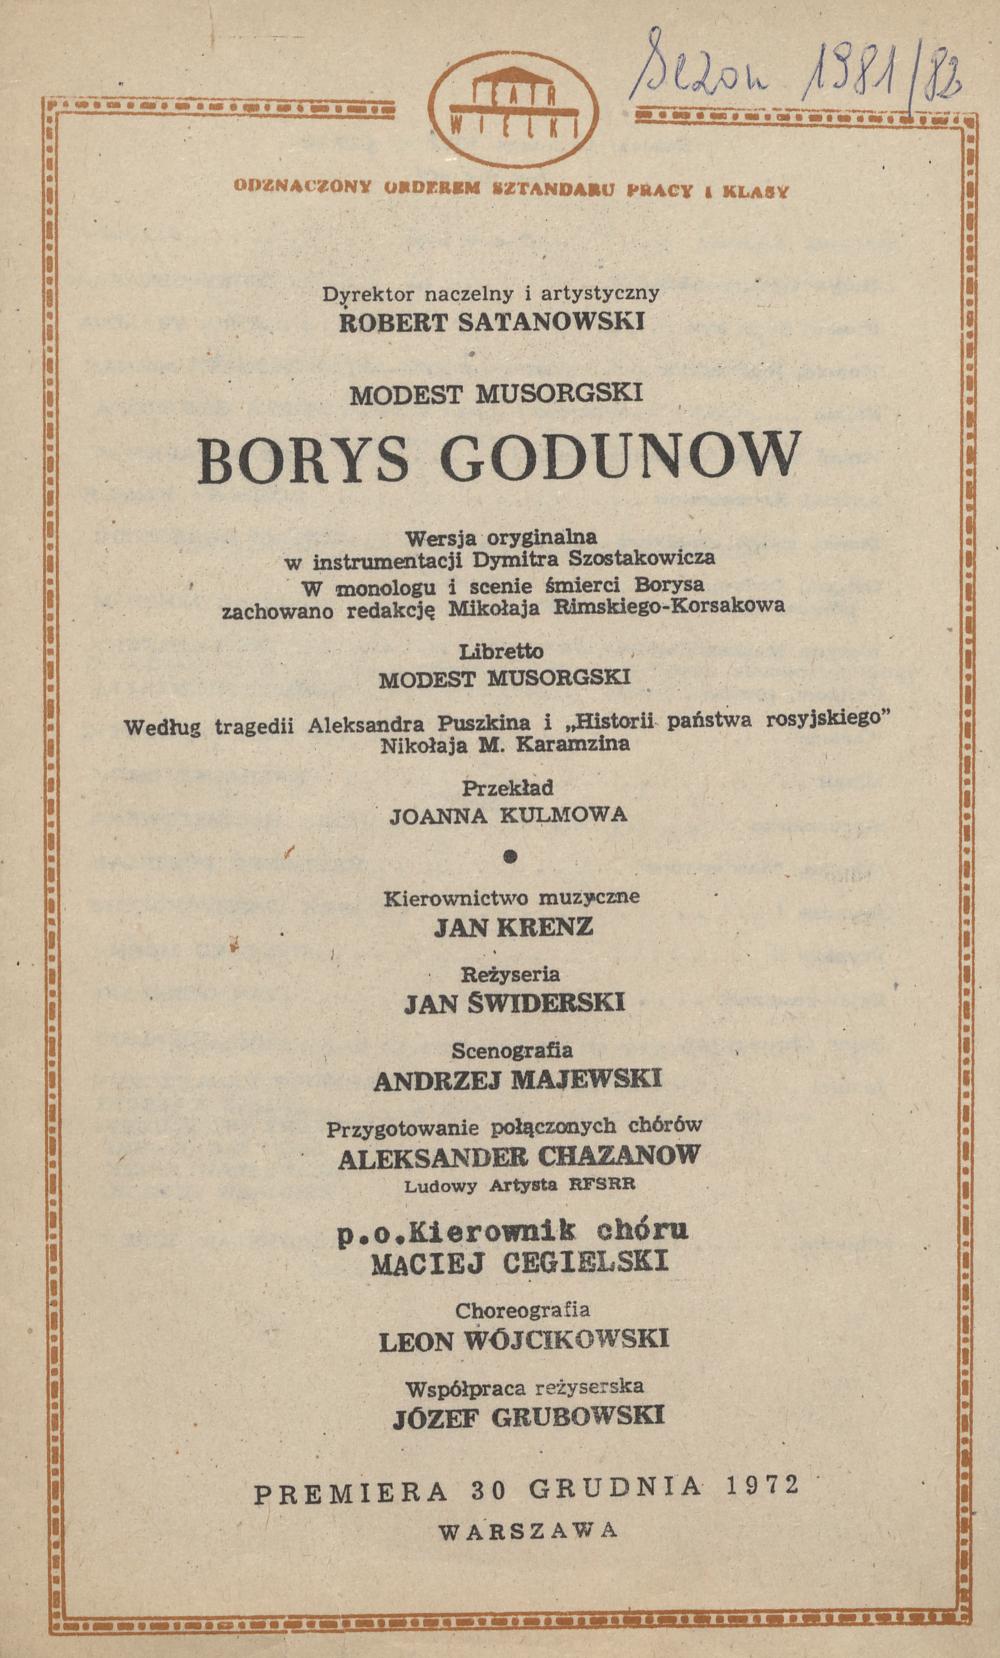 Wkładka obsadowa „Borys Godunow” Modest Musorgski 13-02-1982